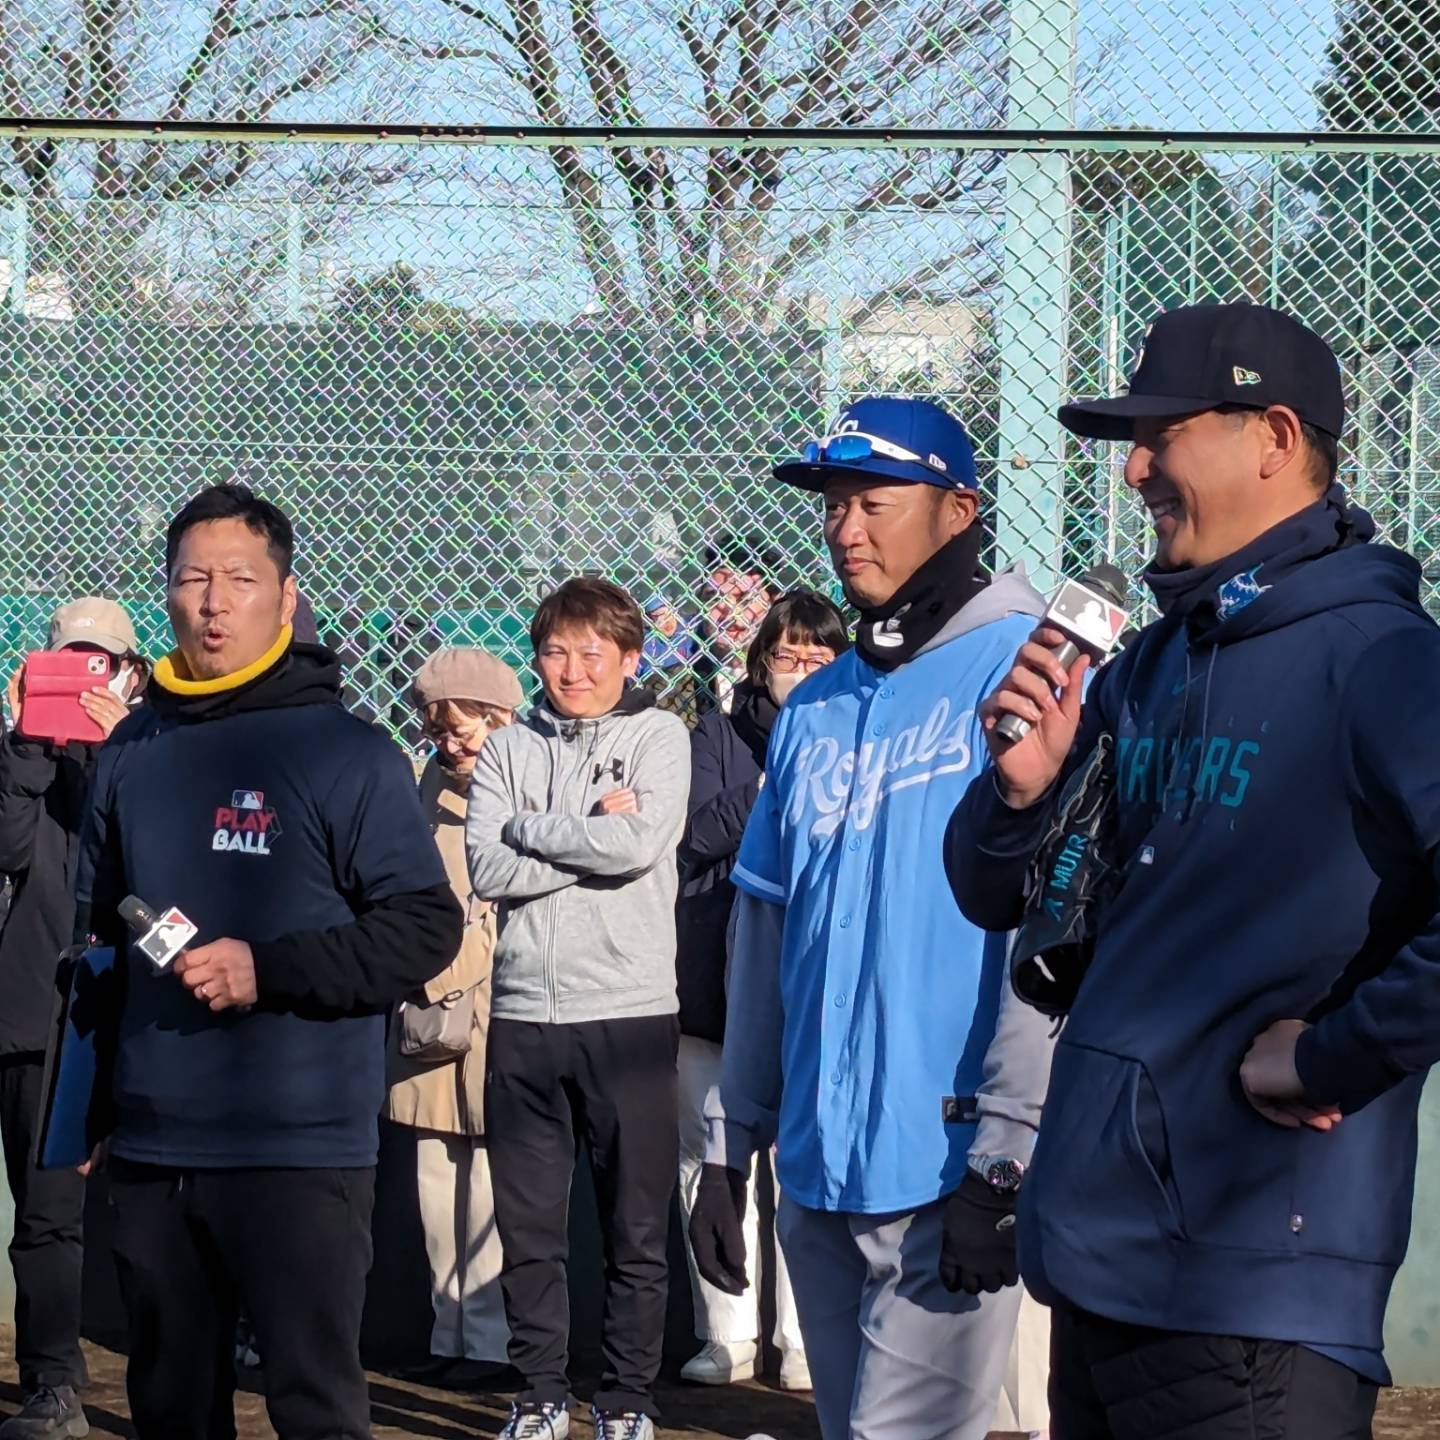 PLAY BALL in 渋谷！！　　　　MAC鈴木さんと岩隈久志さんの野球教室。　　子供たちが楽しく野球に触れる時間でした。　　　　終始、笑顔と歓声が。　　　　最後にはメジャーで活躍した2人のデモンストレーションも。　　子供達はもちろんご両親も楽しんでもらえたのではないですょうか。　　#マック鈴木 #岩隈久志 #野球教室 #mlb #渋谷 #ナレーター #MC #バリトンボイス #ナレーション #Nスタナレーター #低音ボイス #Nスタ #tbs #声のプロフェショナル #古田優児 #DJ古田 #言霊 #コトダマ #kotodama #フリーアナウンサー #スポーツDJ #イケボ #古田